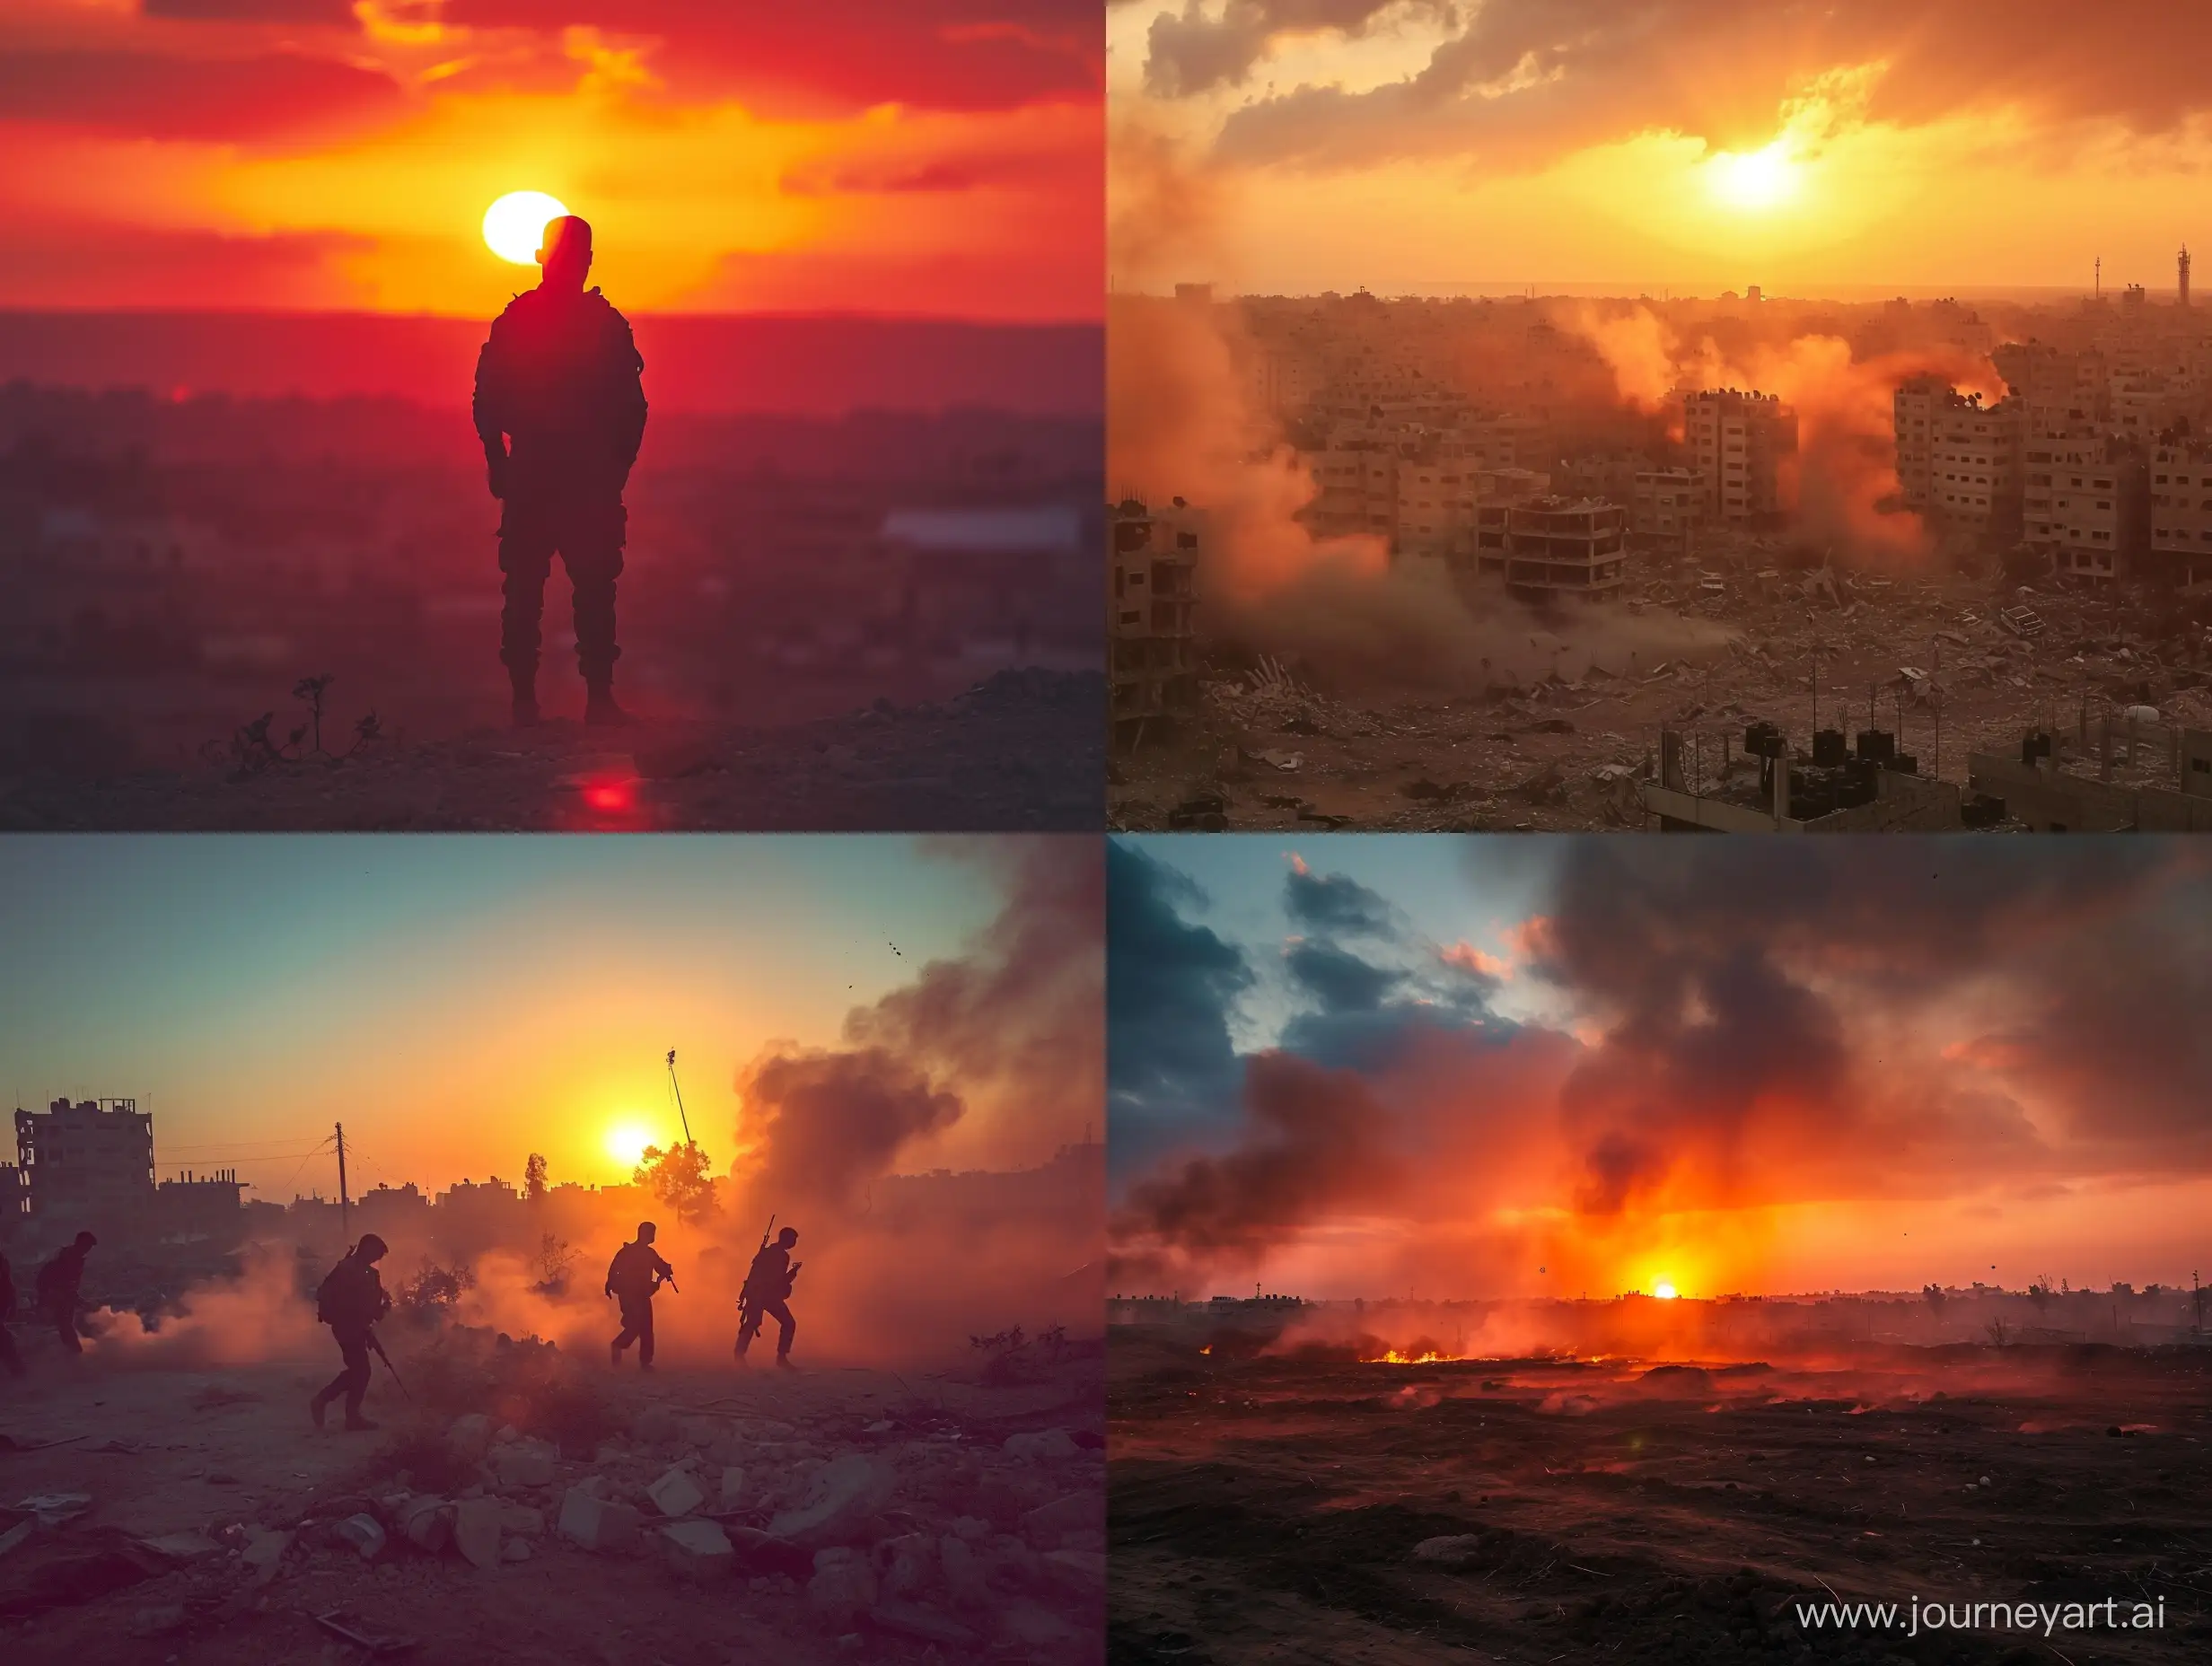 Sunset-War-in-Gaza-Powerful-8K-HD-Imagery